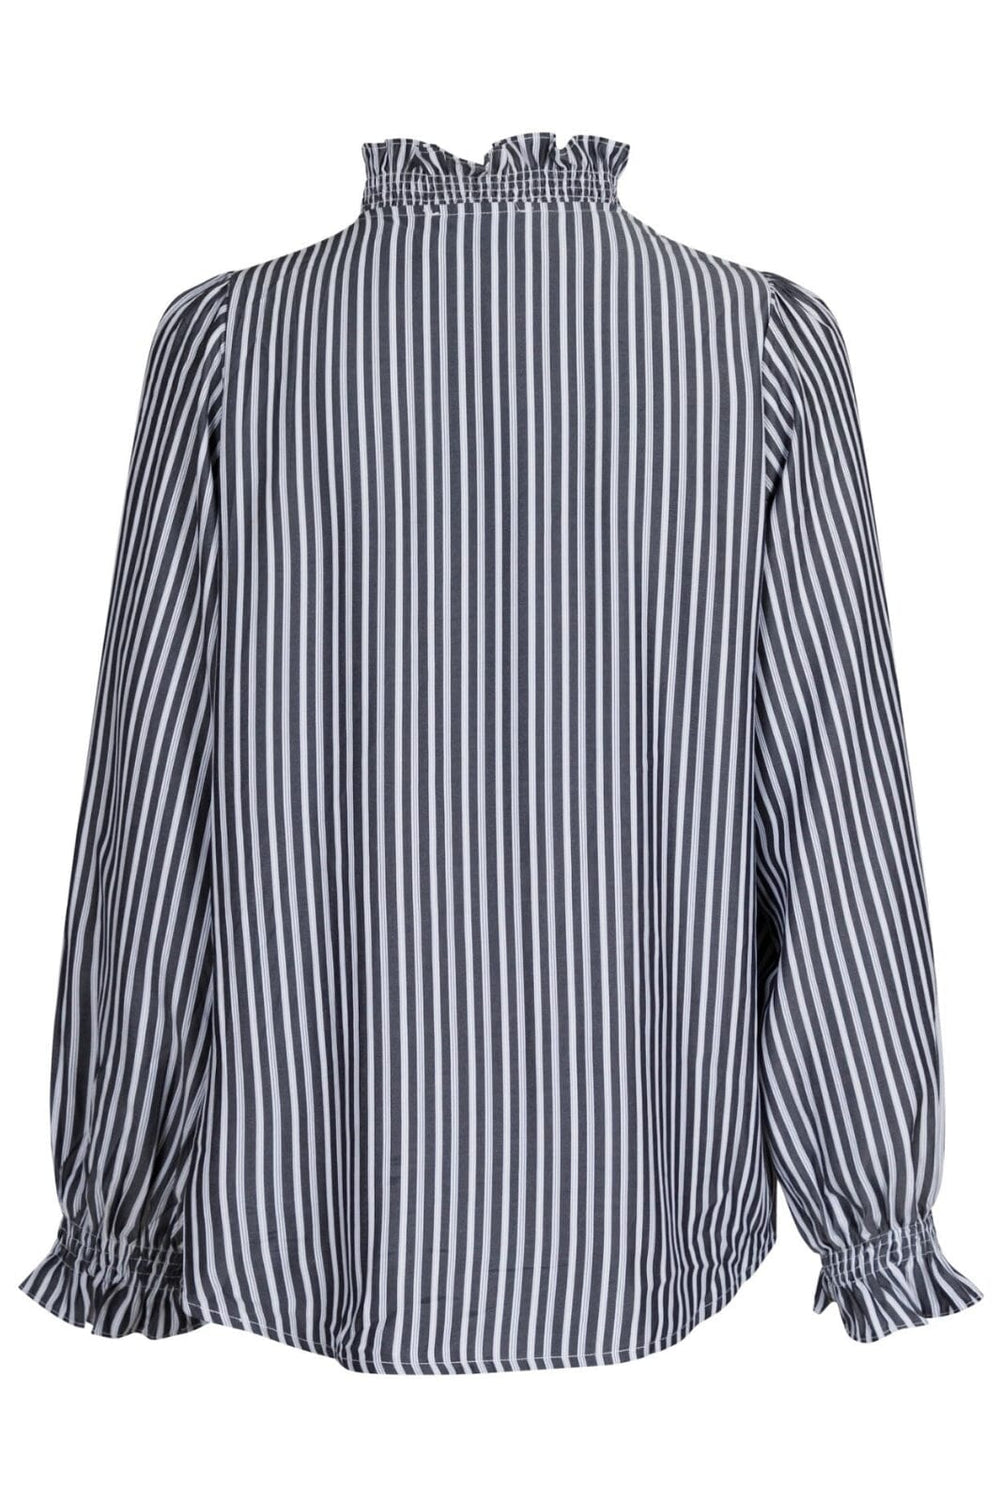 Neo Noir - Brianna Double Stripe Blouse - Dark Grey Skjorter 